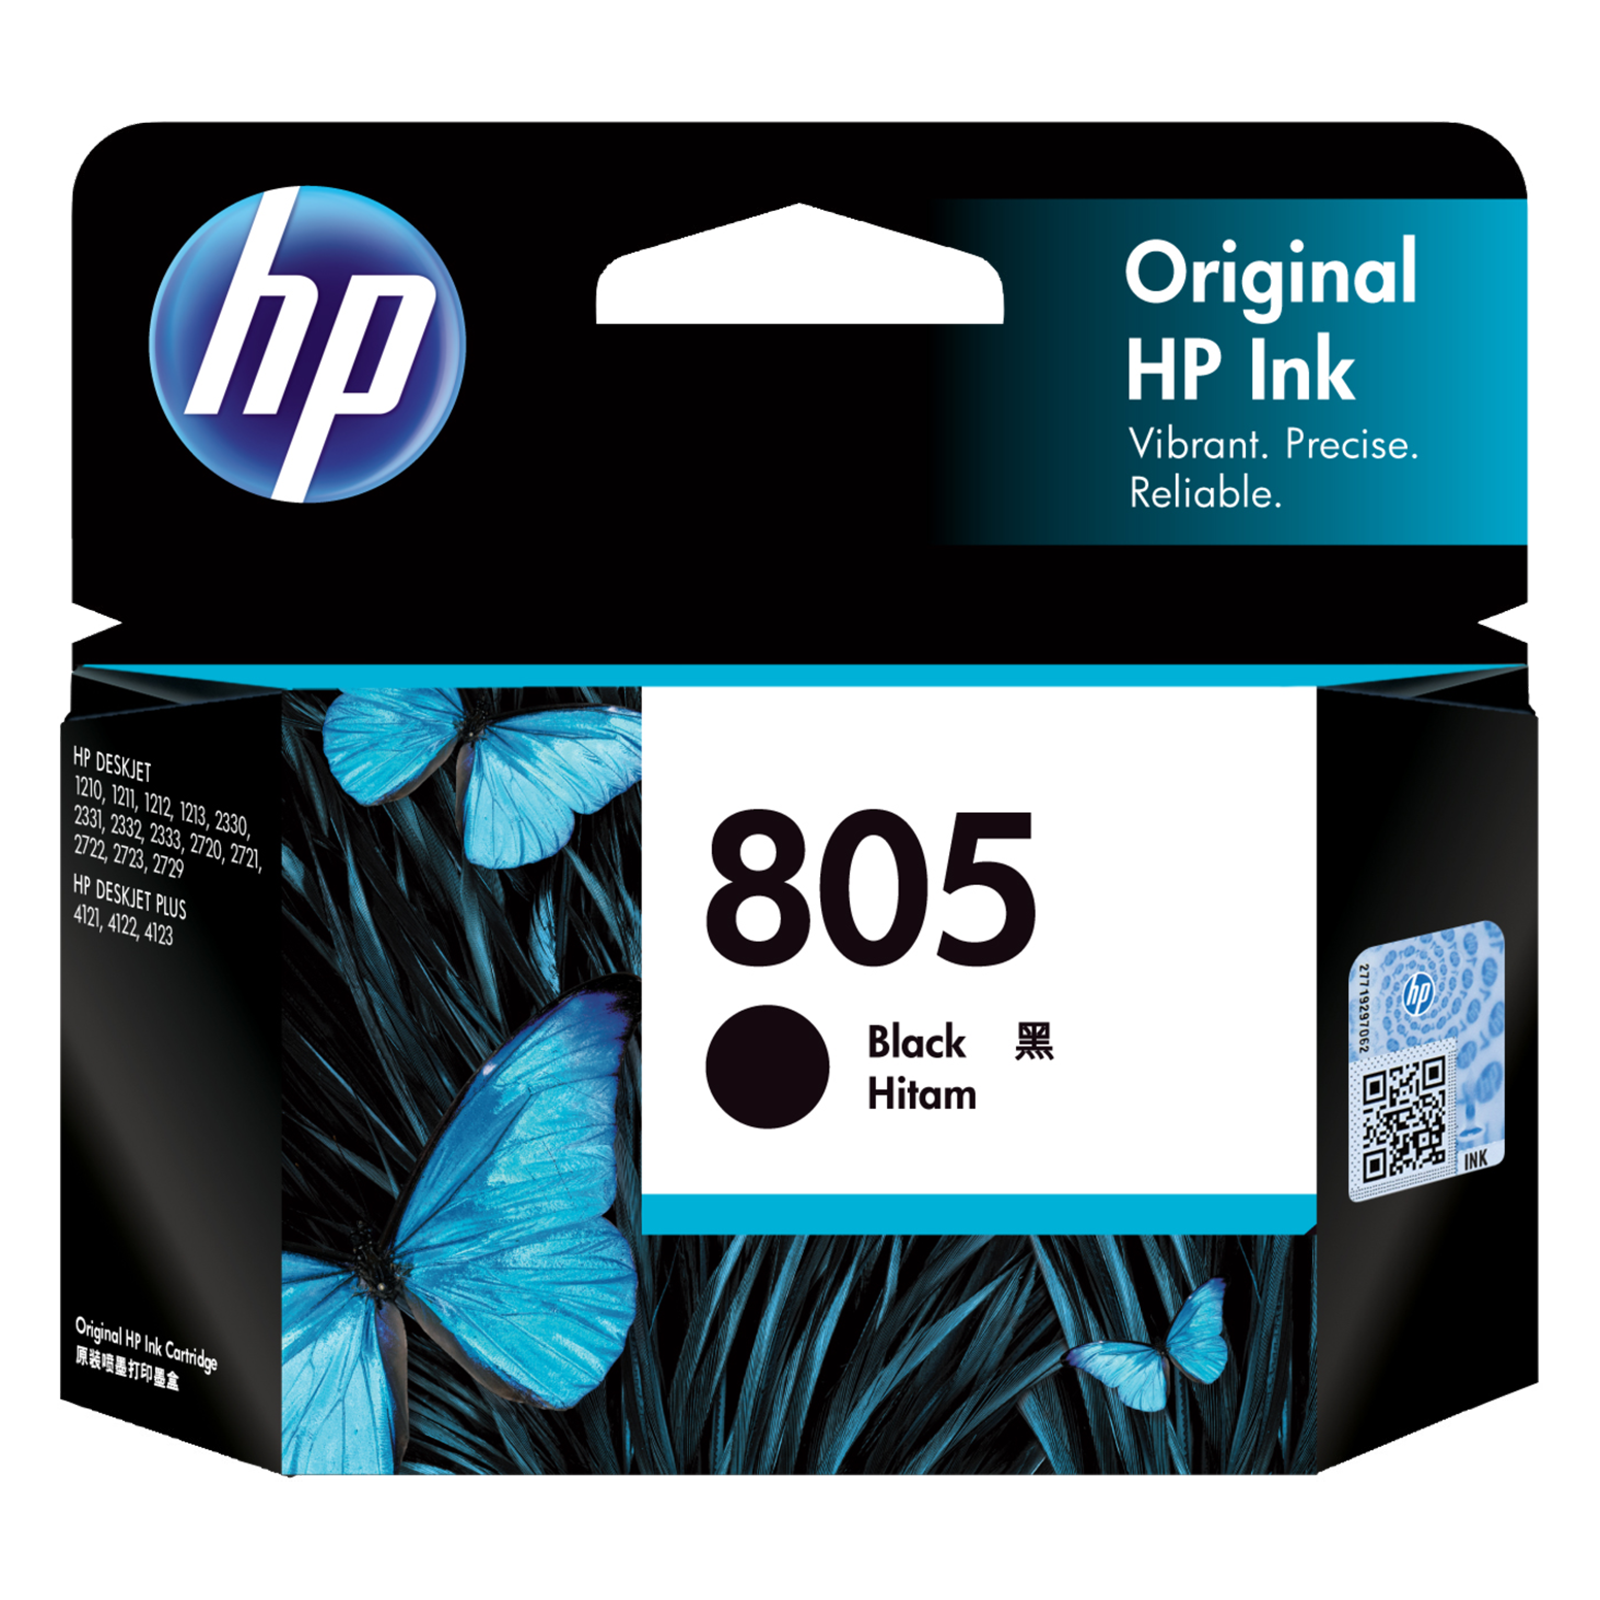 HP 805 Original Pack of 1 Ink Cartridge (3YM73AA, Black)_1